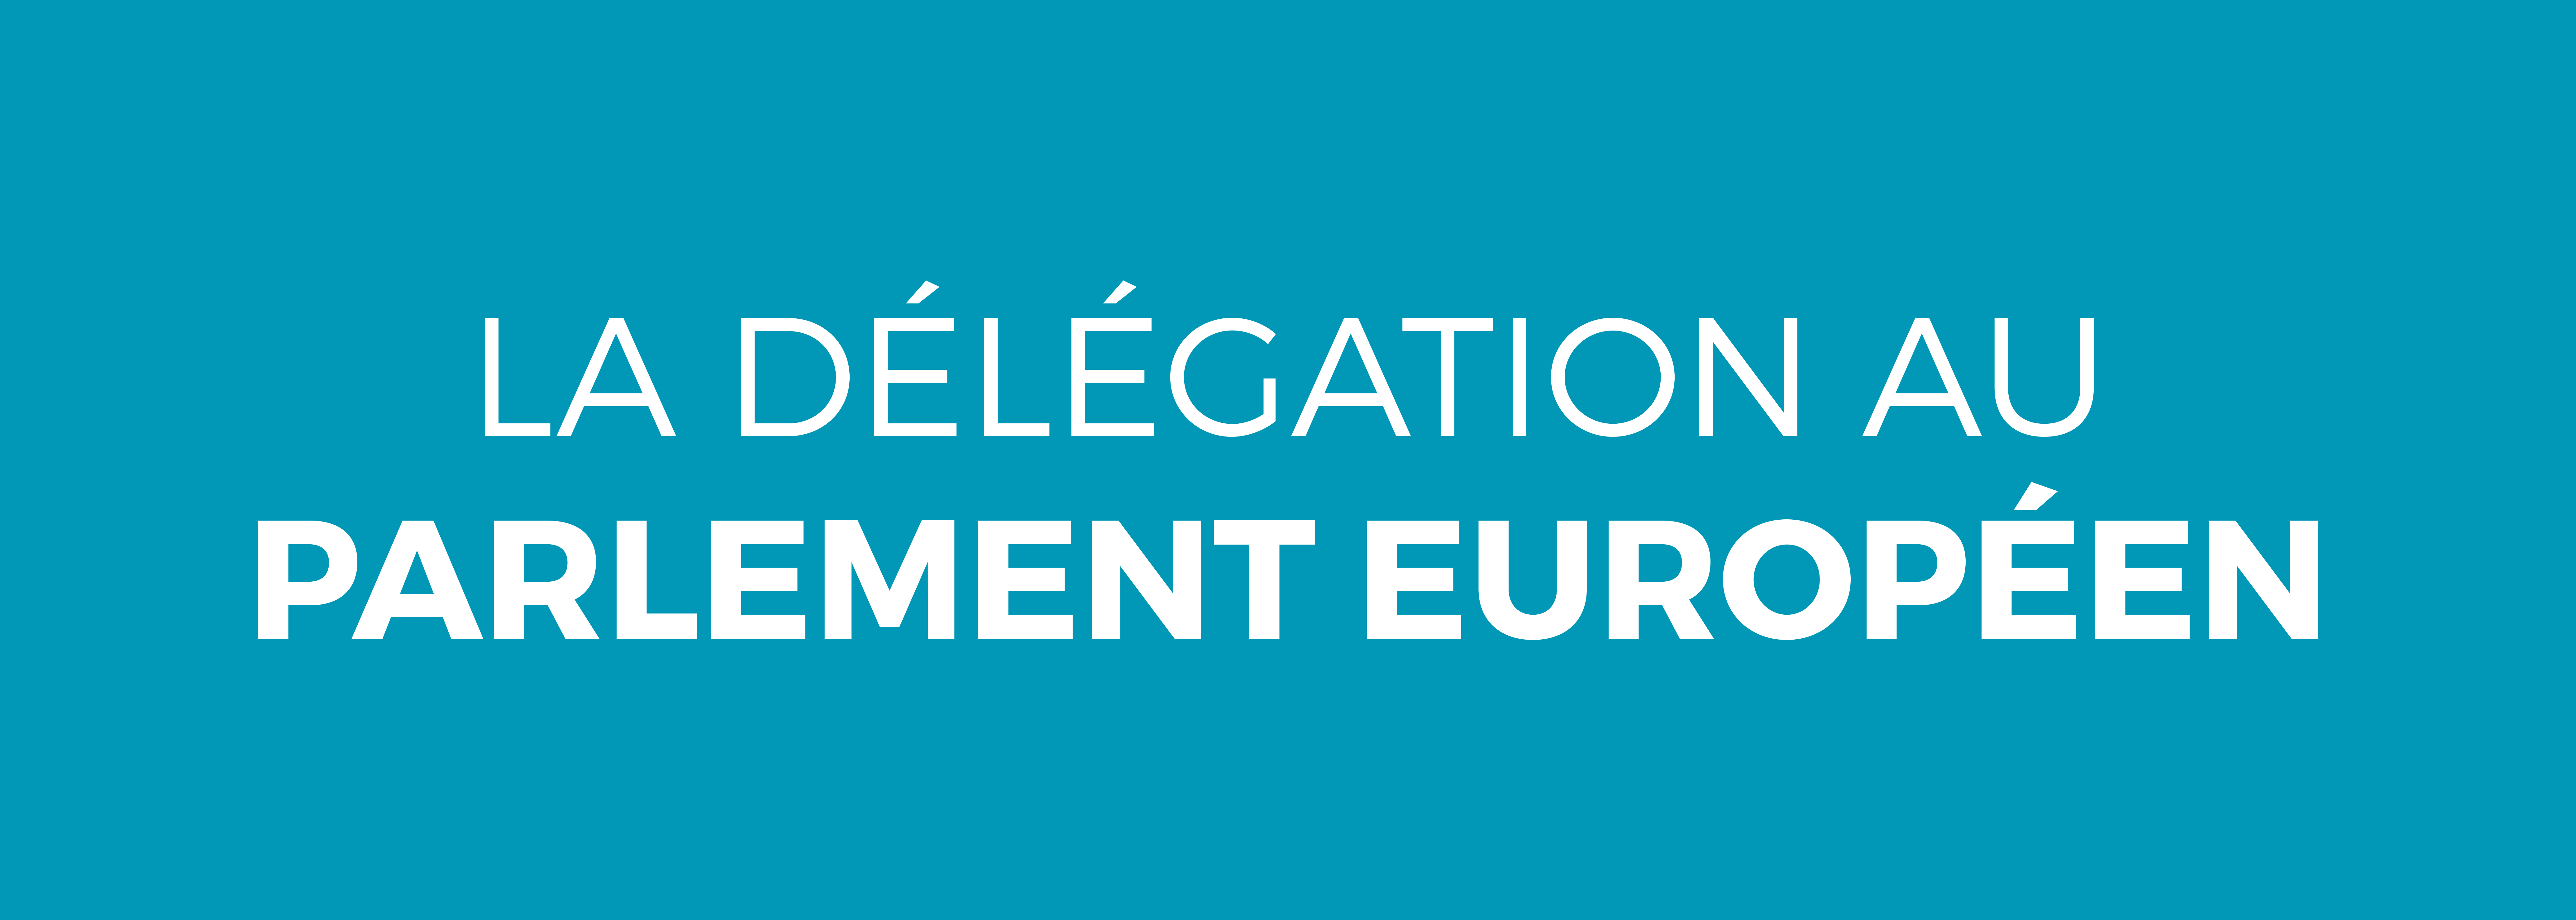 La délégation au parlement européen